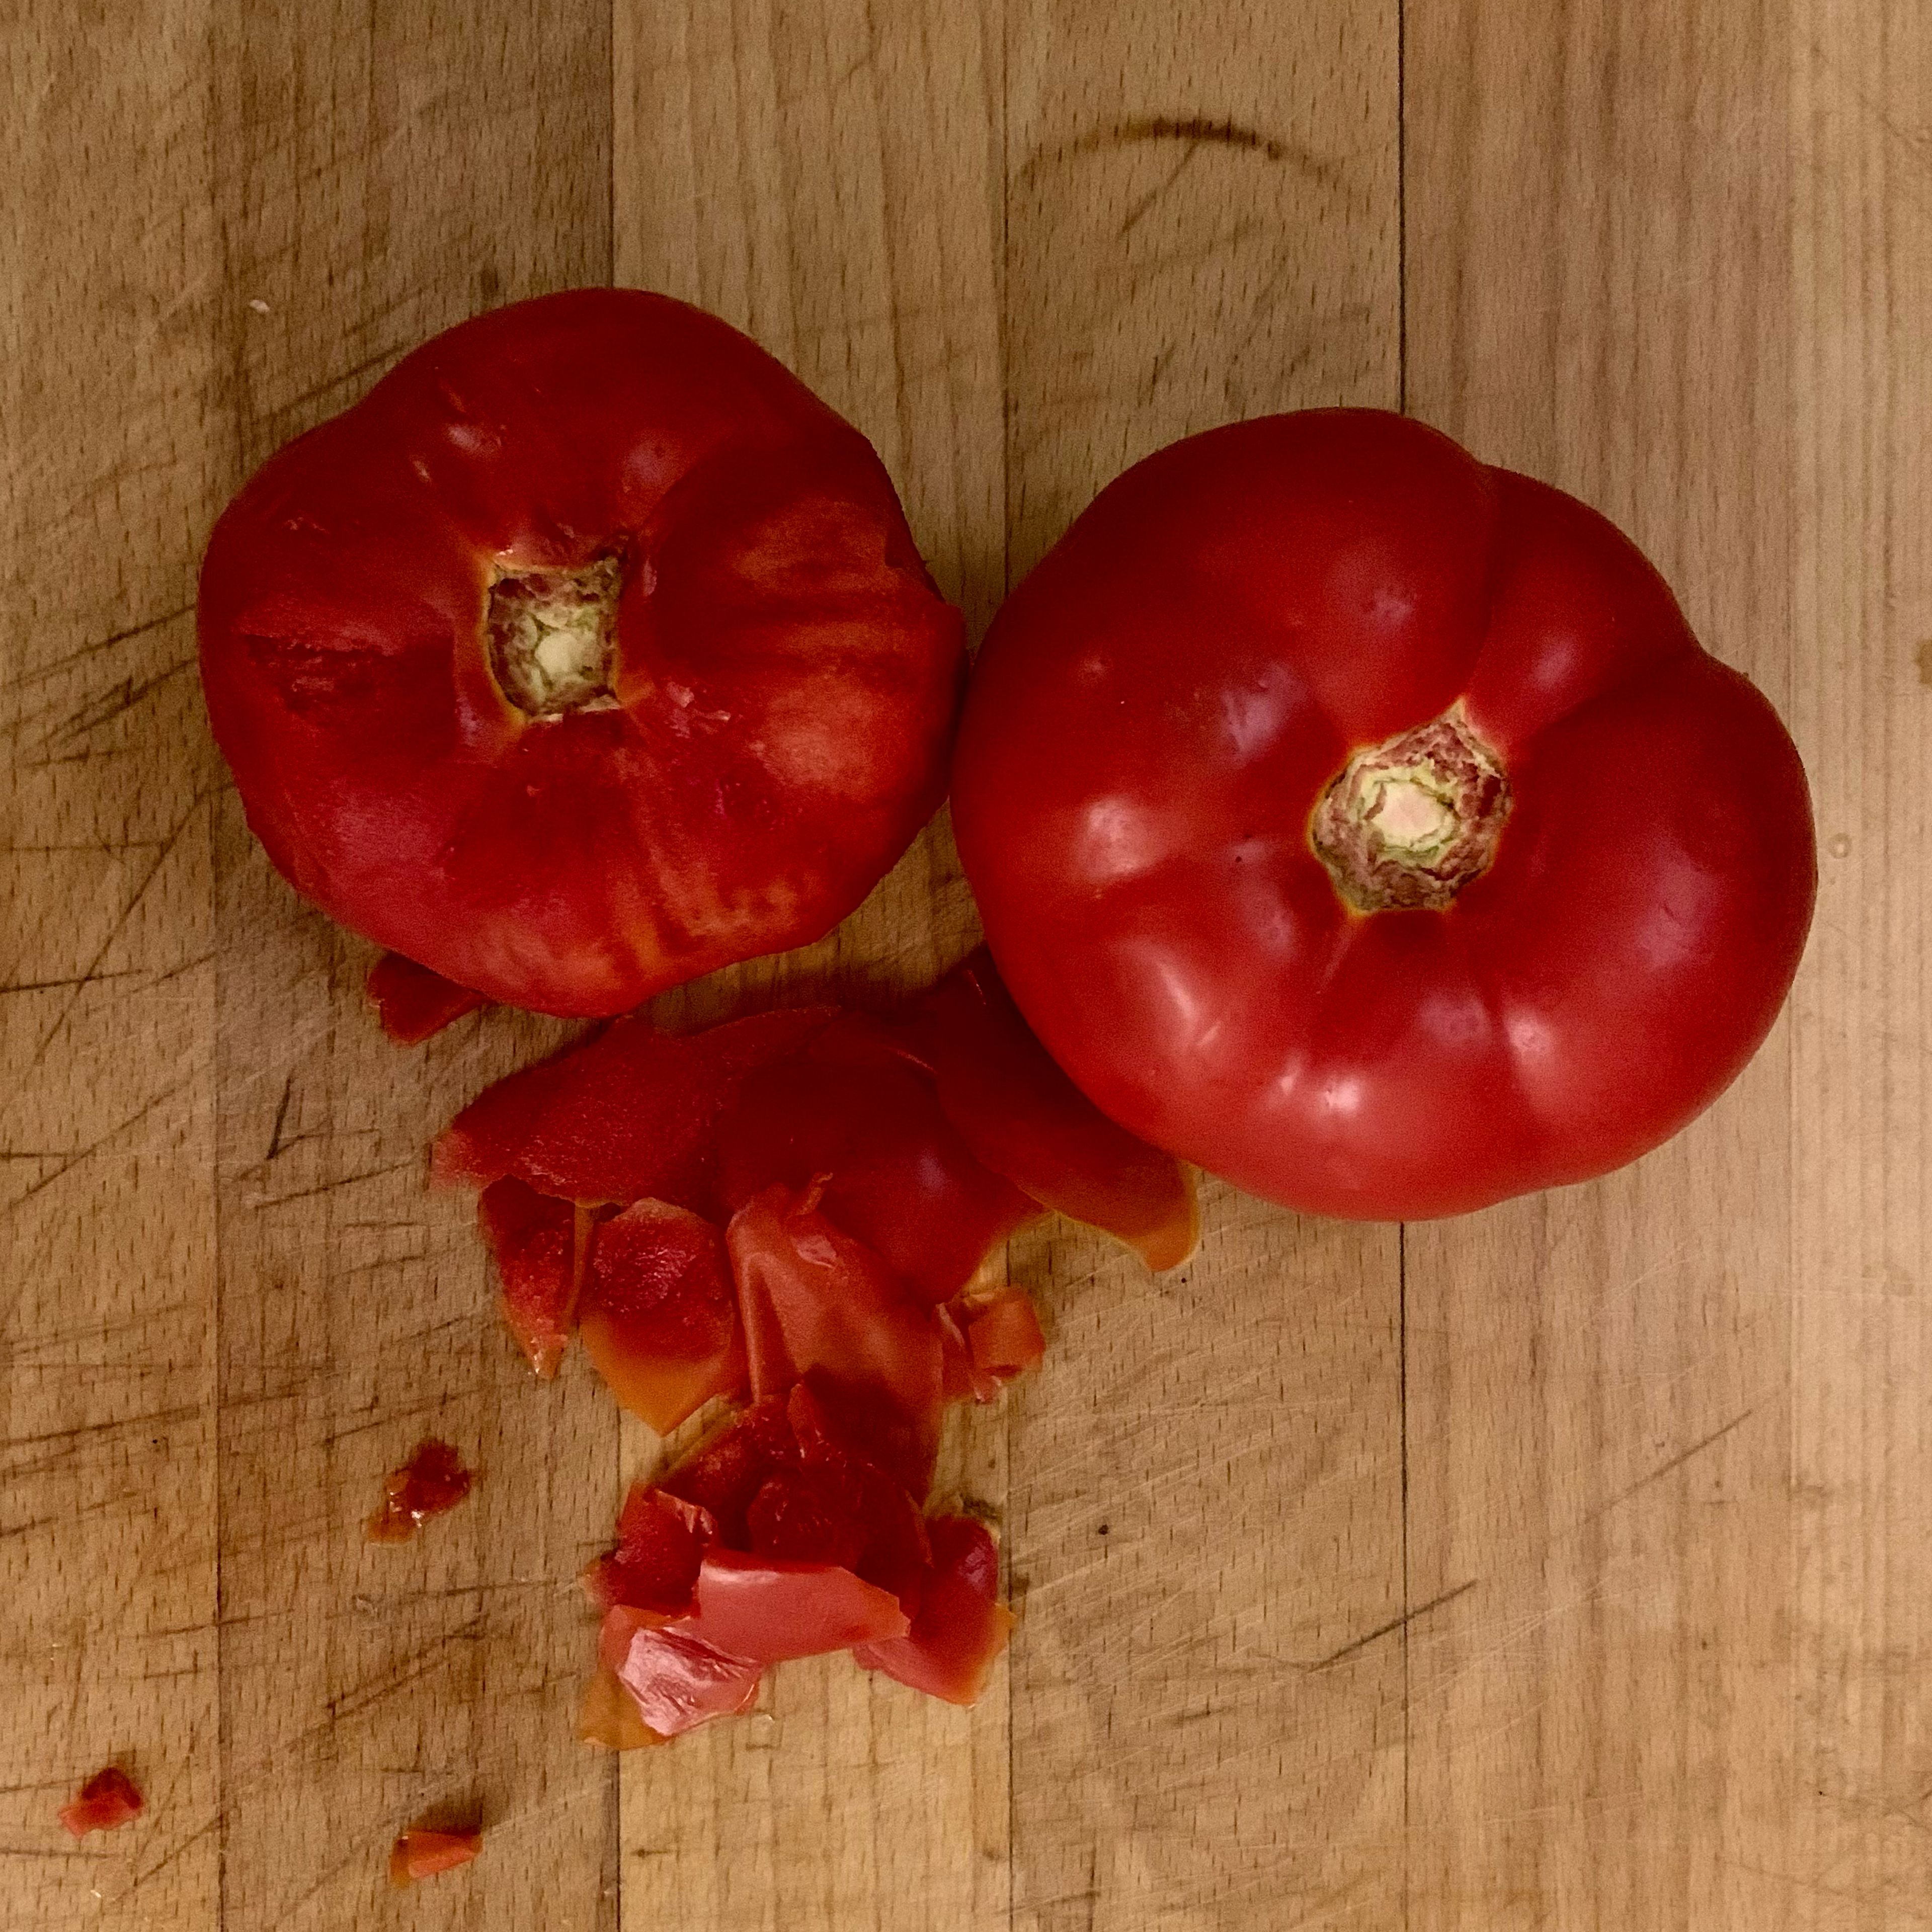 Während das Brot einweicht, schäle die Tomaten. Damit vermeidest du diese kleinen Schalenstücke nach dem Mixen. Wenn du wenig Zeit hast, kannst du diesen Schritt überspringen. Mixe dann einfach etwas gründlicher.